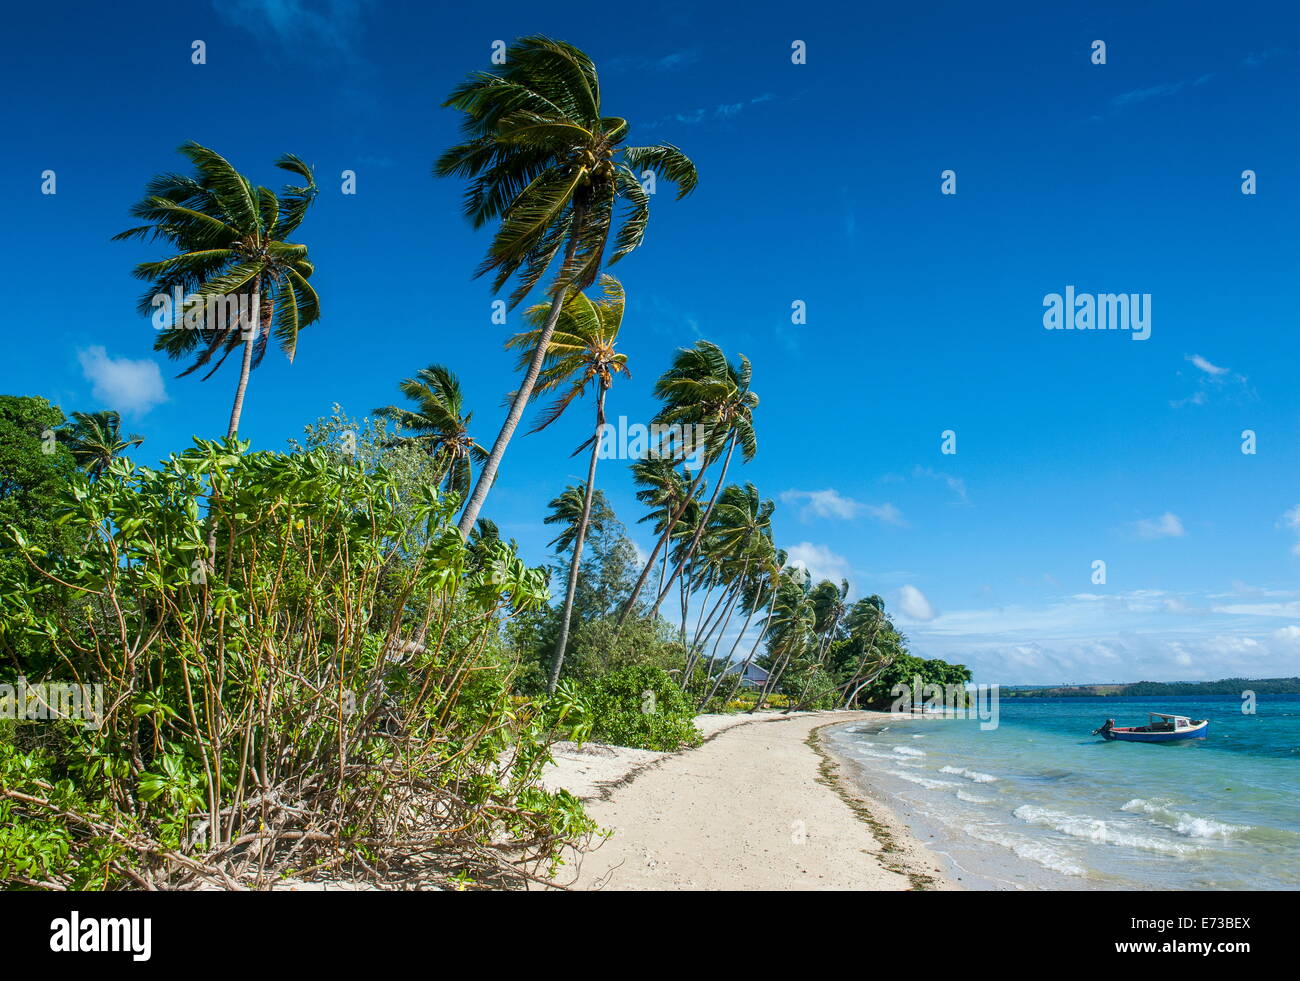 Da Palme spiaggia di sabbia bianca su di un isolotto di Vavau, Isole Vavau, Tonga, South Pacific Pacific Foto Stock